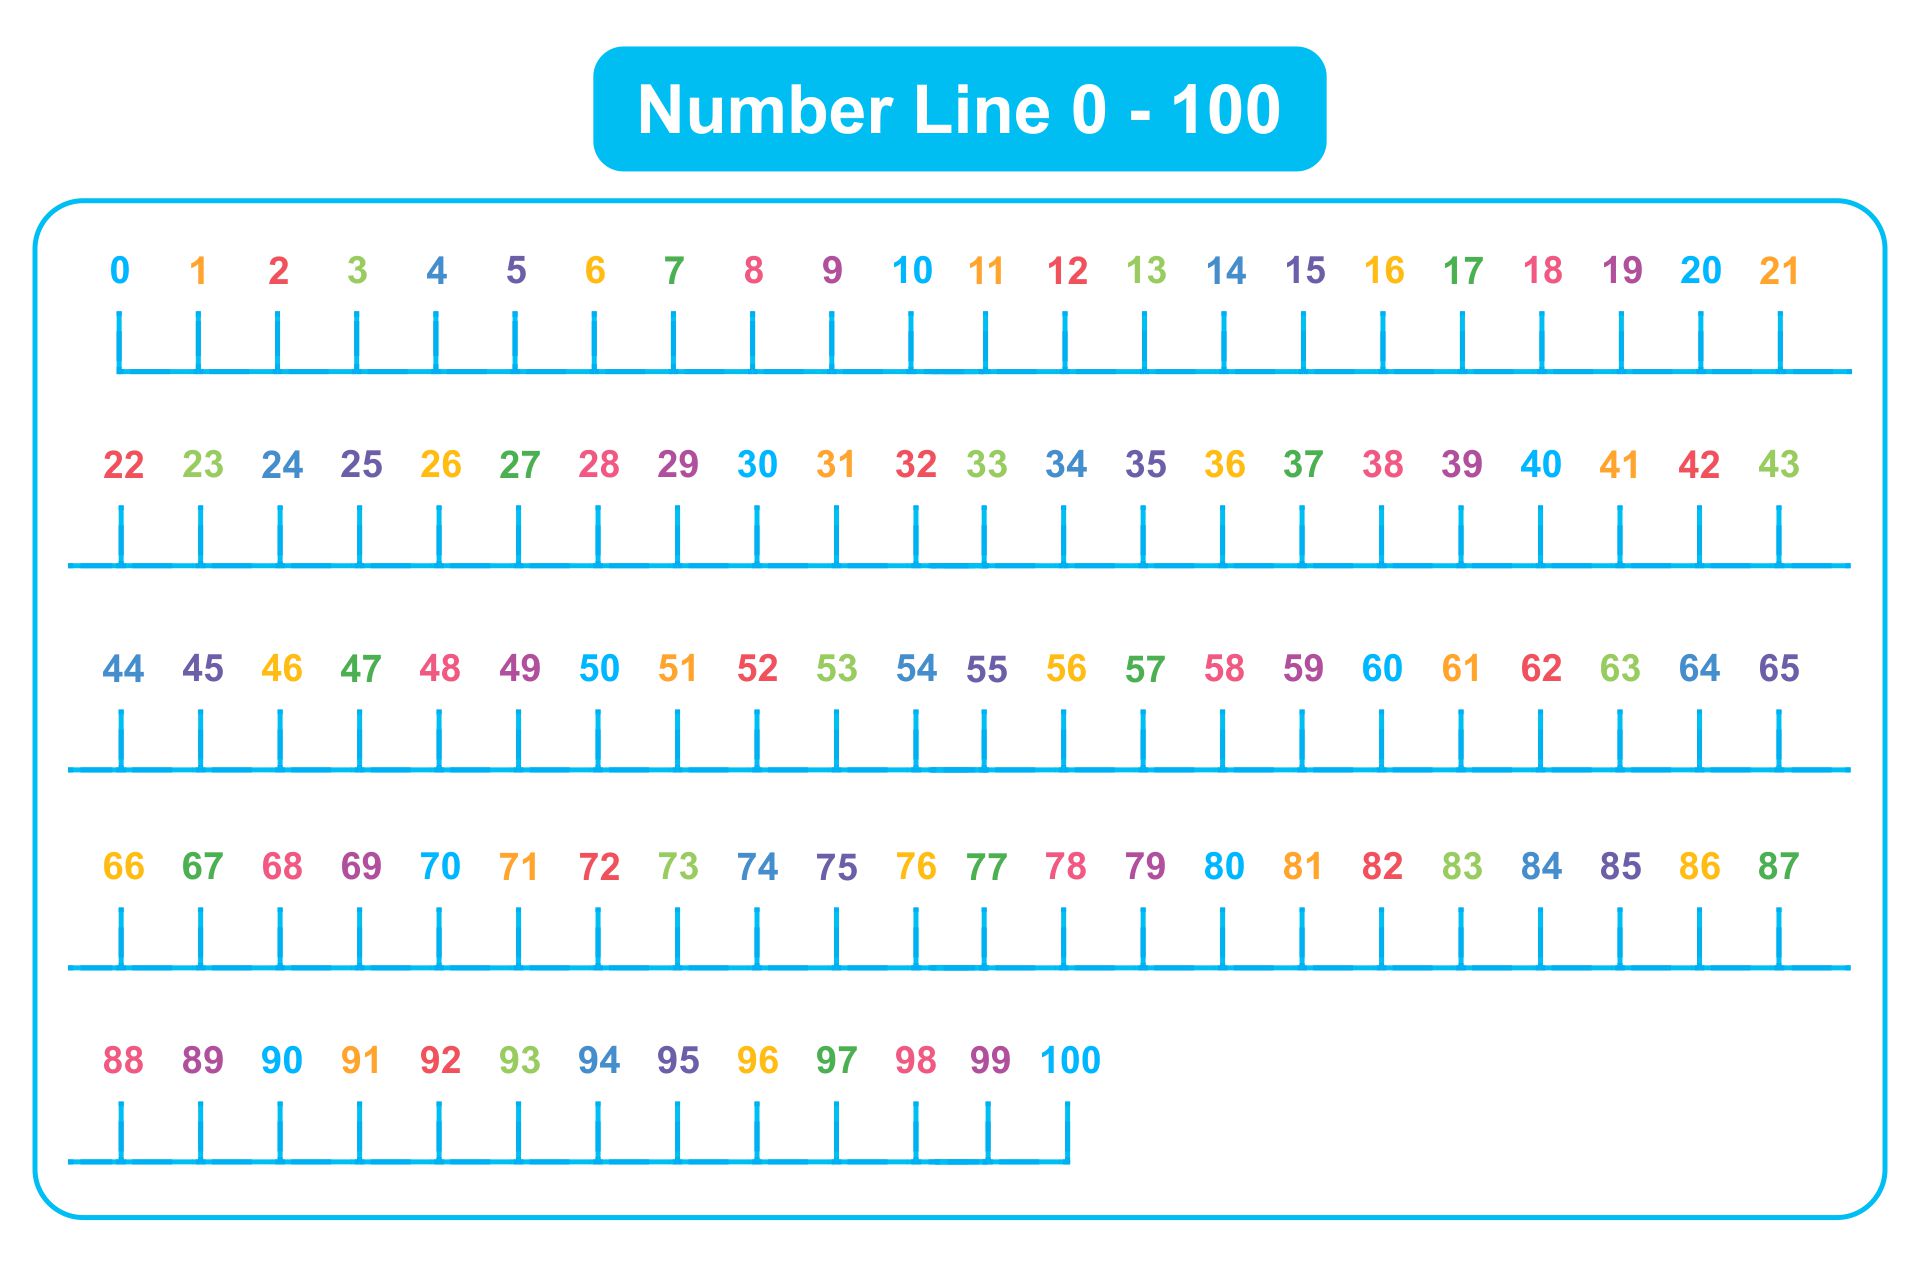 Printable Number Line 1 100